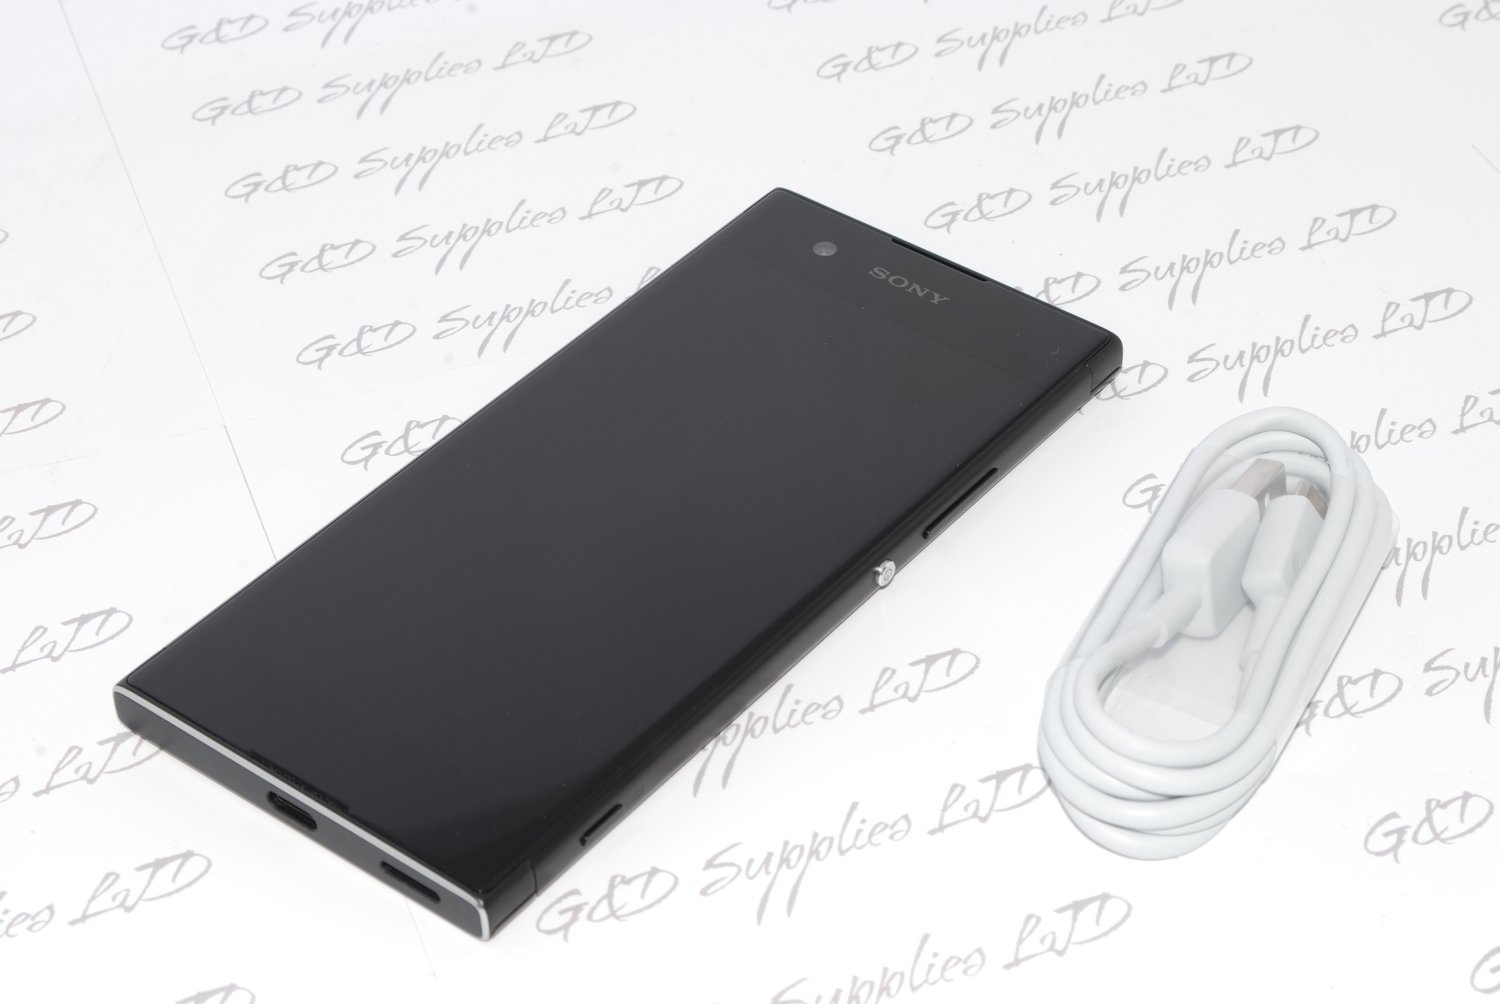 Sony Xperia XA1 G3121 Black Android 32GB 4G WIFI GPS NFC  Unlocked Smartphone uk stock NO BOX #